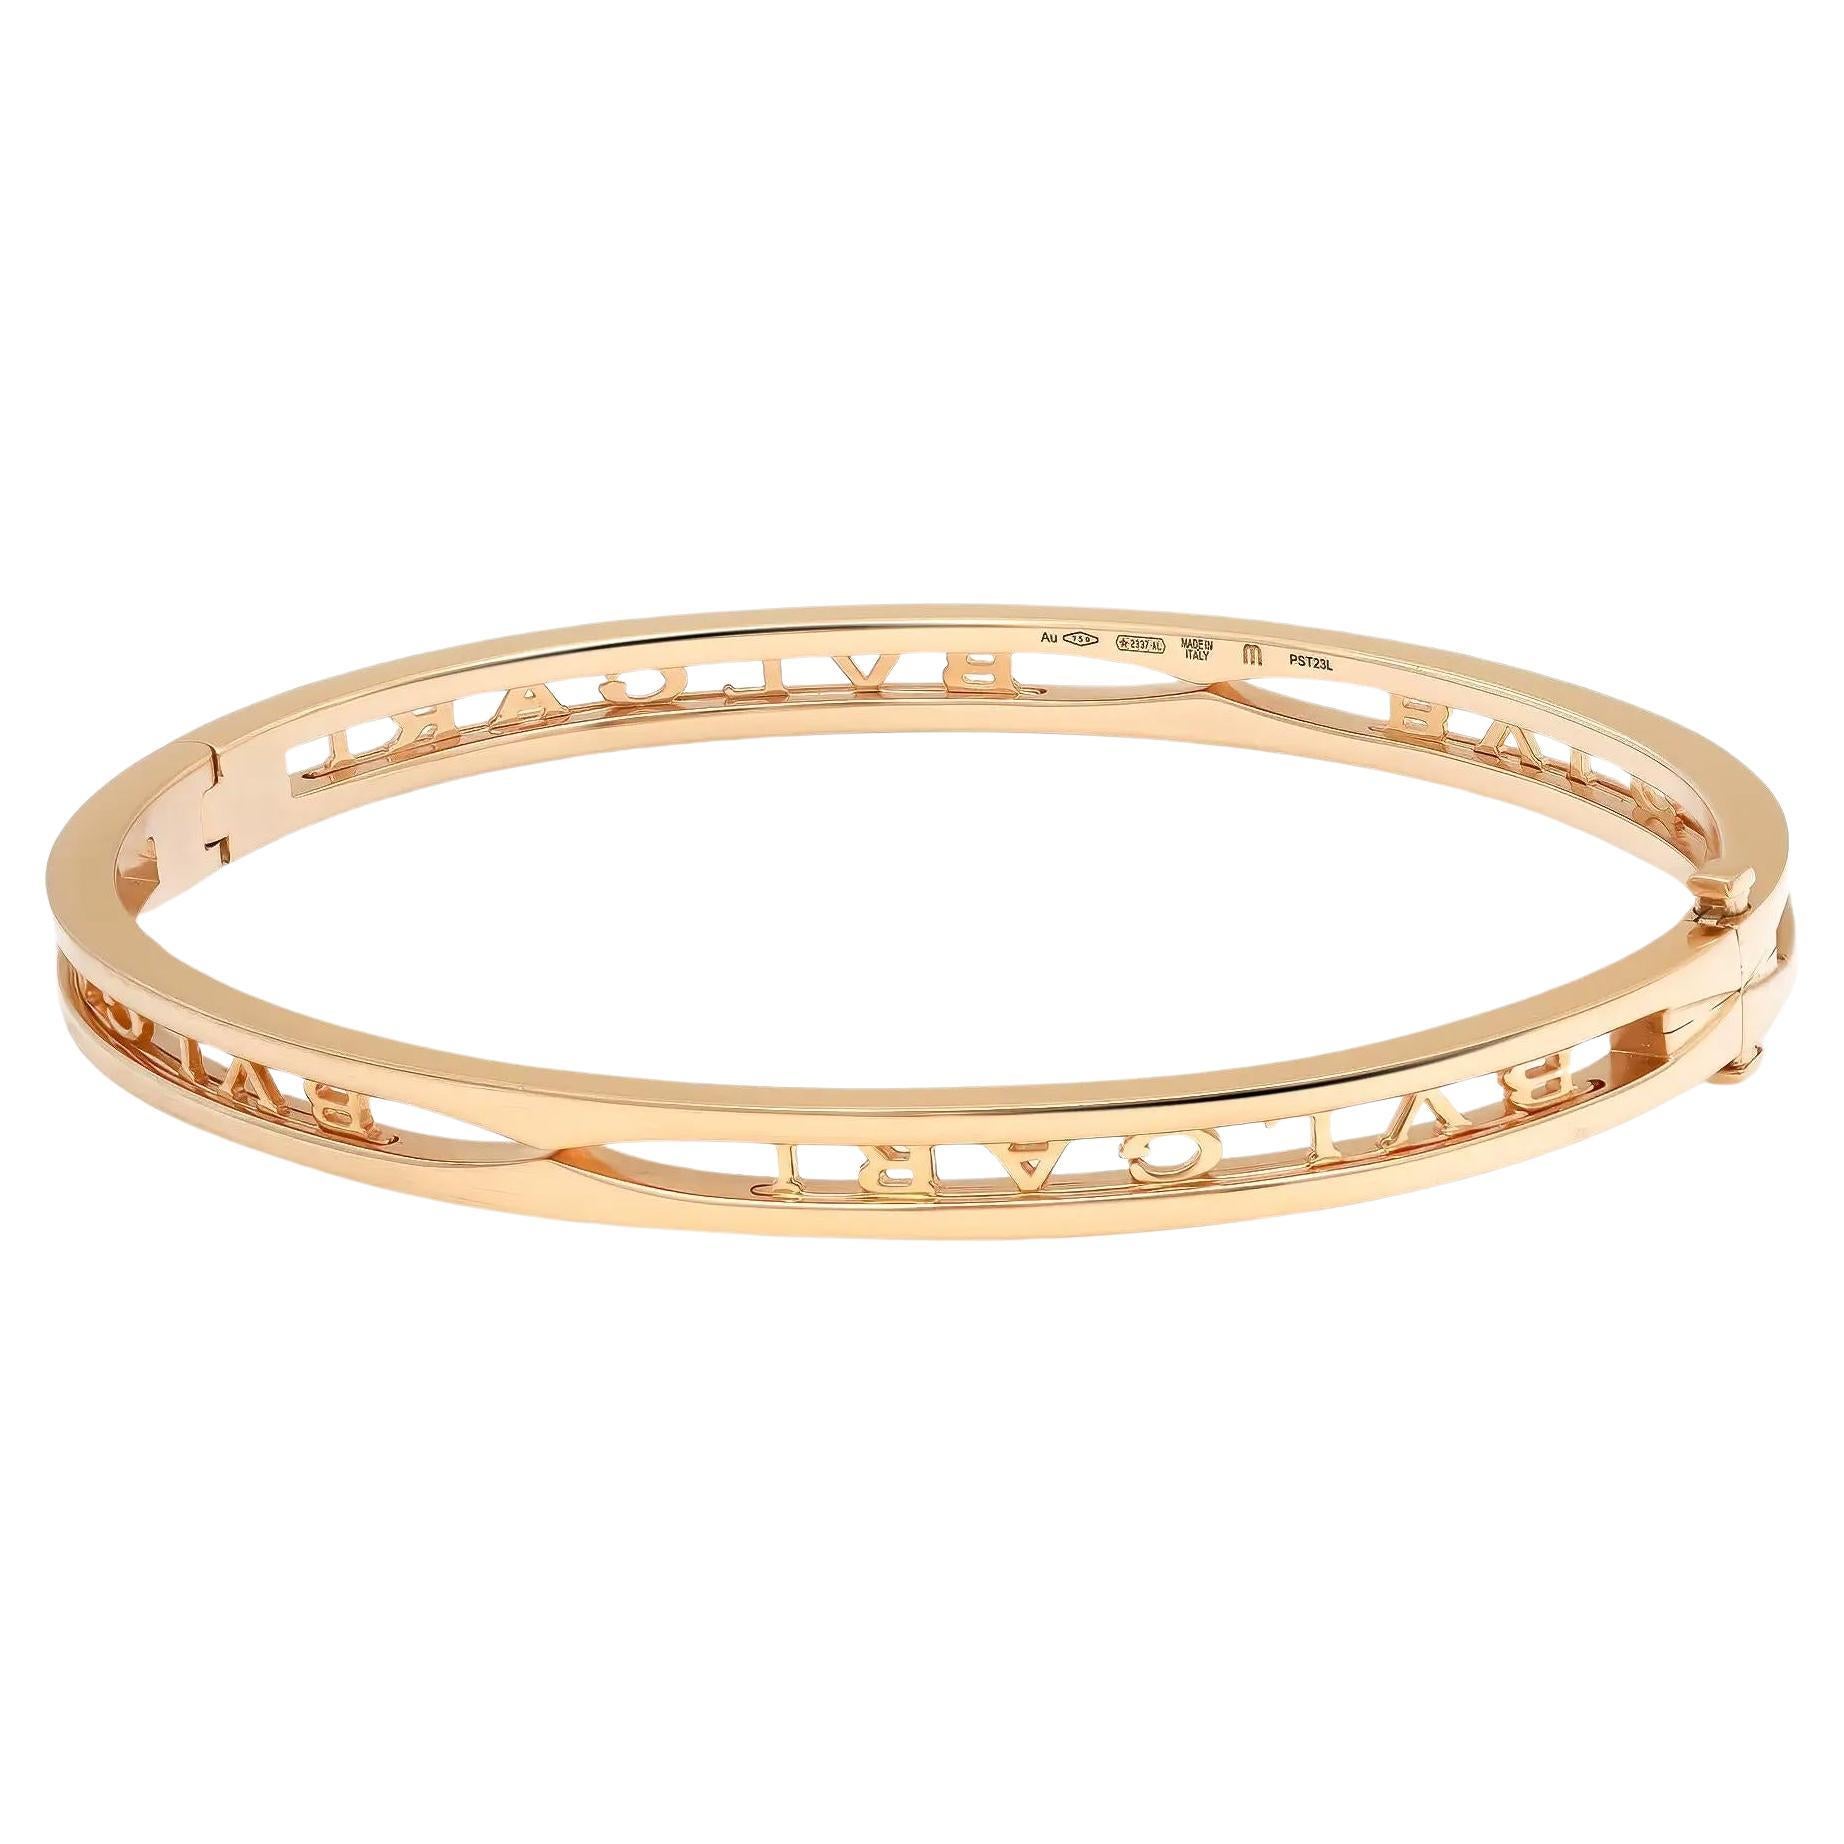 Audacieux et magnifique, ce bracelet est une véritable essence de l'esthétique joaillière. Fabriqué en or jaune lustré 18K. Ce bracelet présente une forme ovale avec le logo Bvlgari découpé. Super empilable et facile à porter. Taille : Moyenne